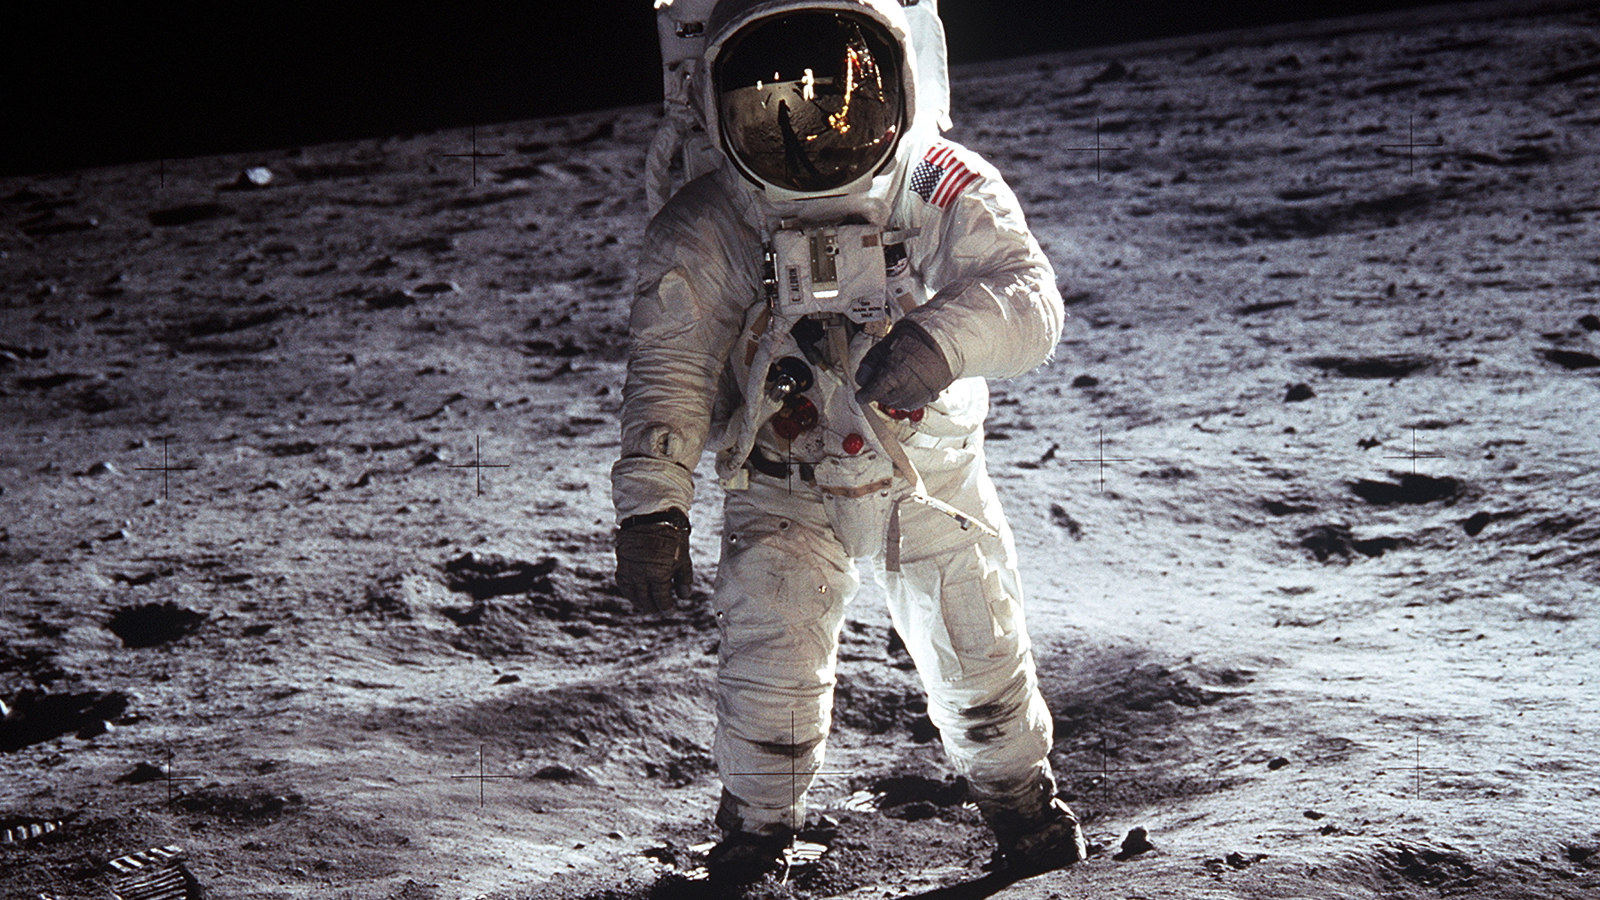 Kuvassa on astronautti Buzz Aldrin kävelyllä valkoisessa avaruuspuvussa, jossa on USA:n lippu hihassa.  Kuun pinta näkyy tummana ja vaaleana kivisenä pintana.